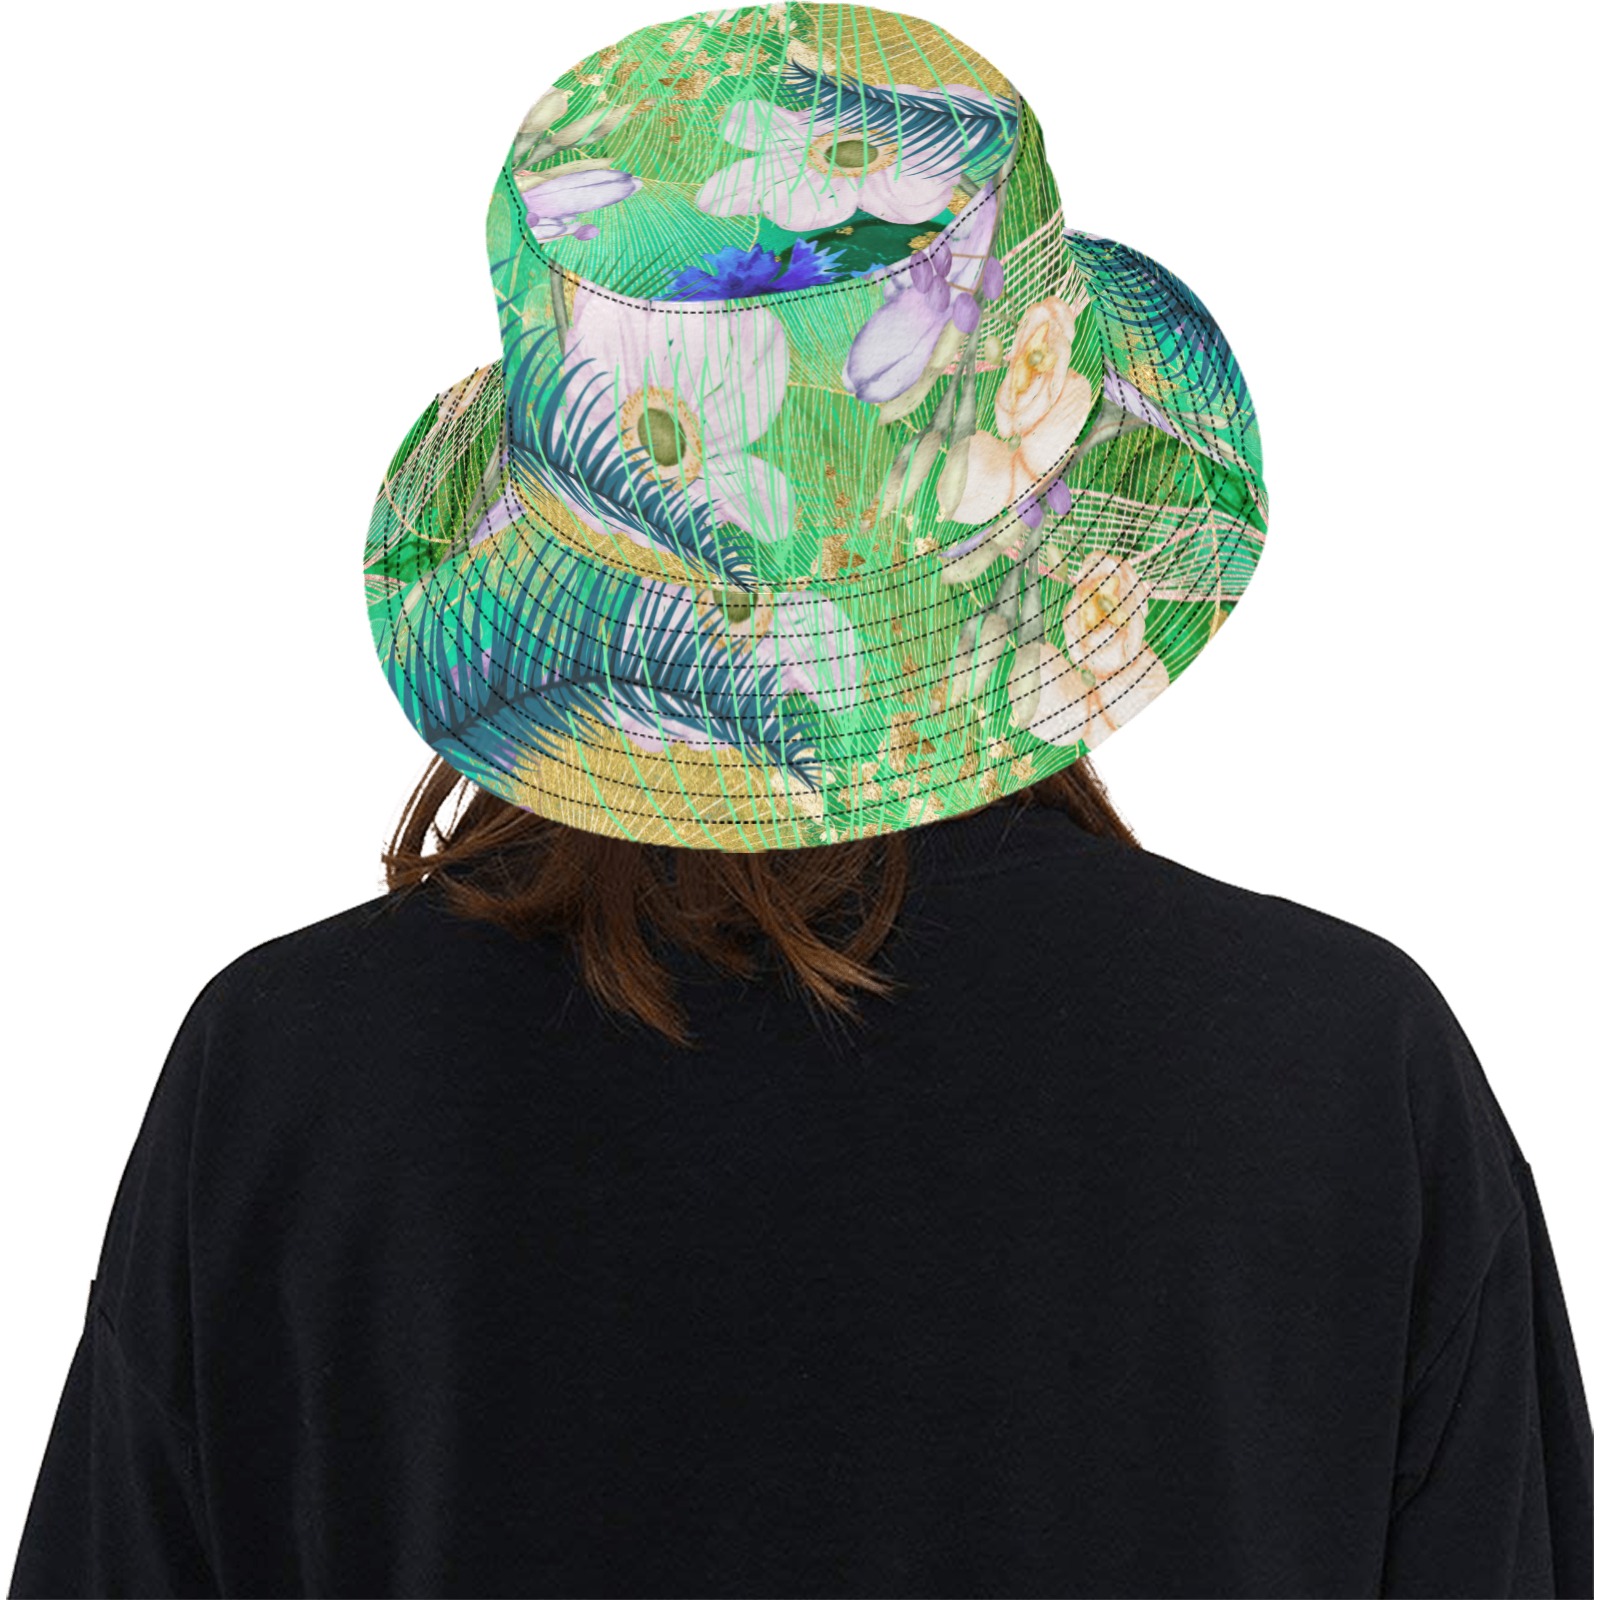 White Orchid Blue Ferns Bucket Hat Unisex Summer Bucket Hat